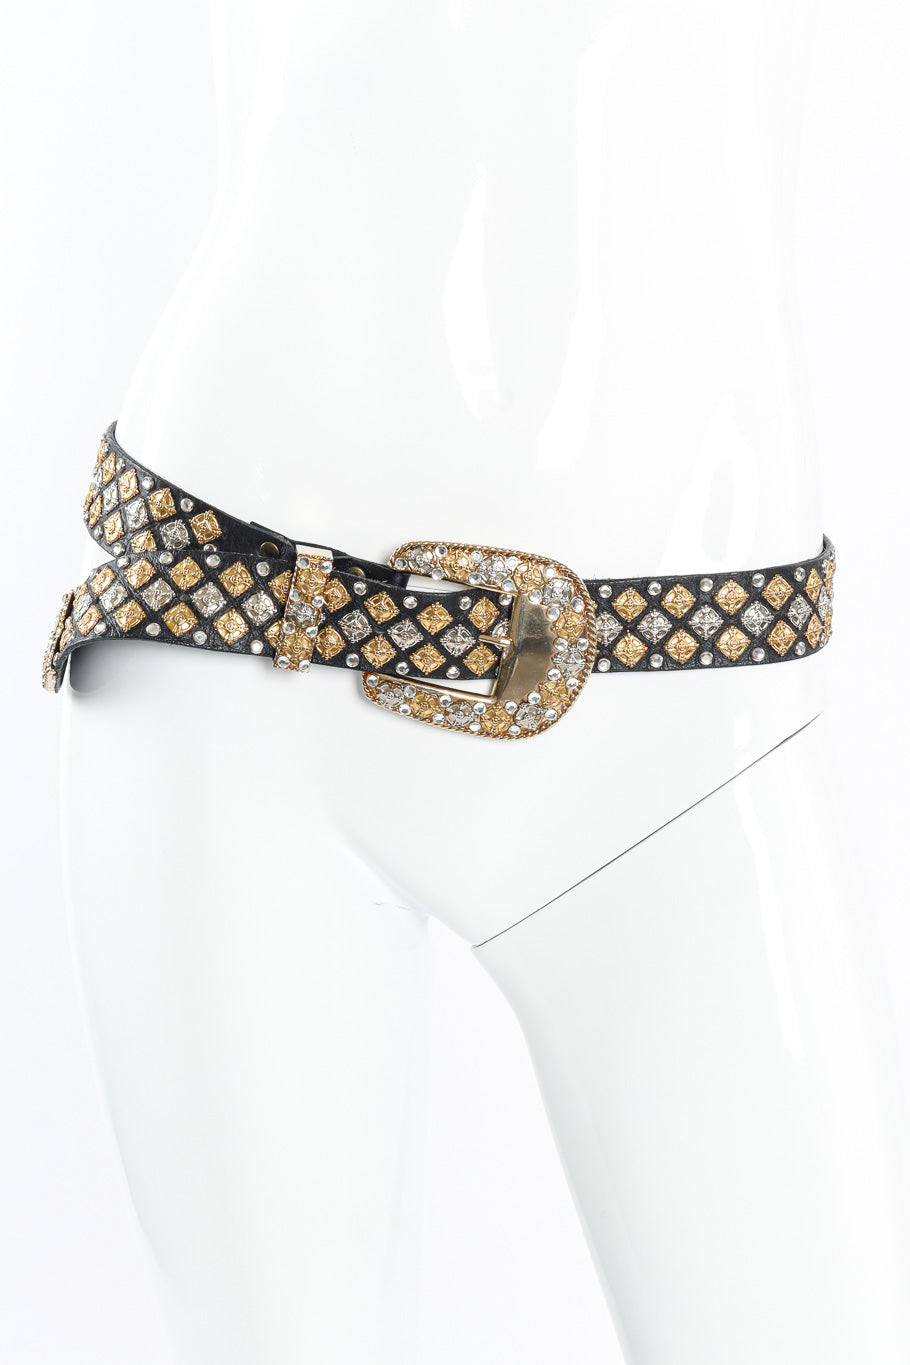 Michael Morrison crystal studded leather belt on mannequin @recessla